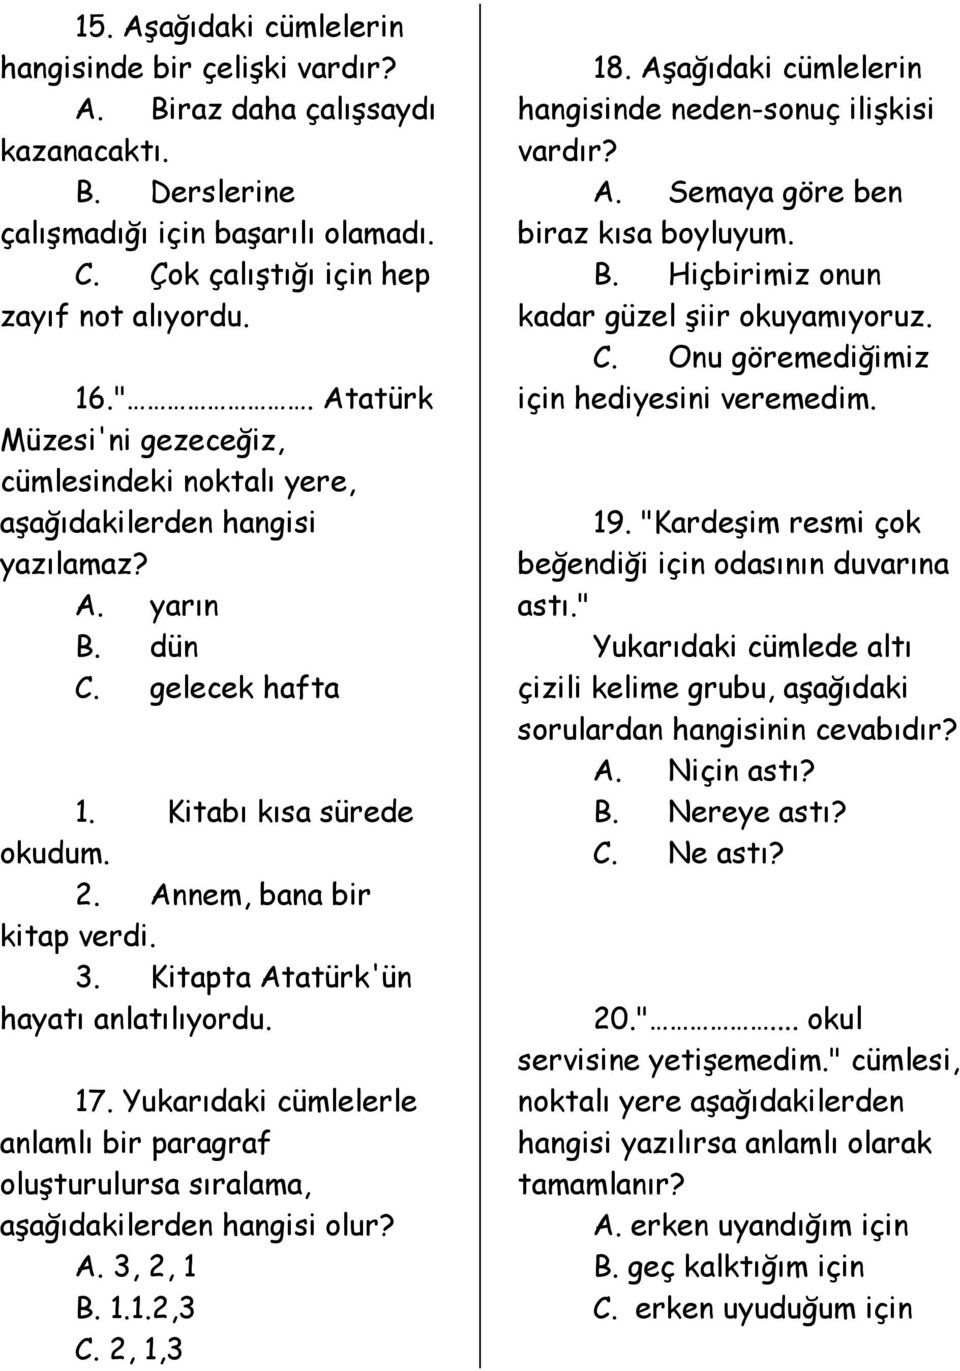 Kitapta Atatürk'ün hayatı anlatılıyordu. 17. Yukarıdaki cümlelerle anlamlı bir paragraf oluşturulursa sıralama, aşağıdakilerden hangisi olur? A. 3, 2, 1 B. 1.1.2,3 C. 2, 1,3 18.